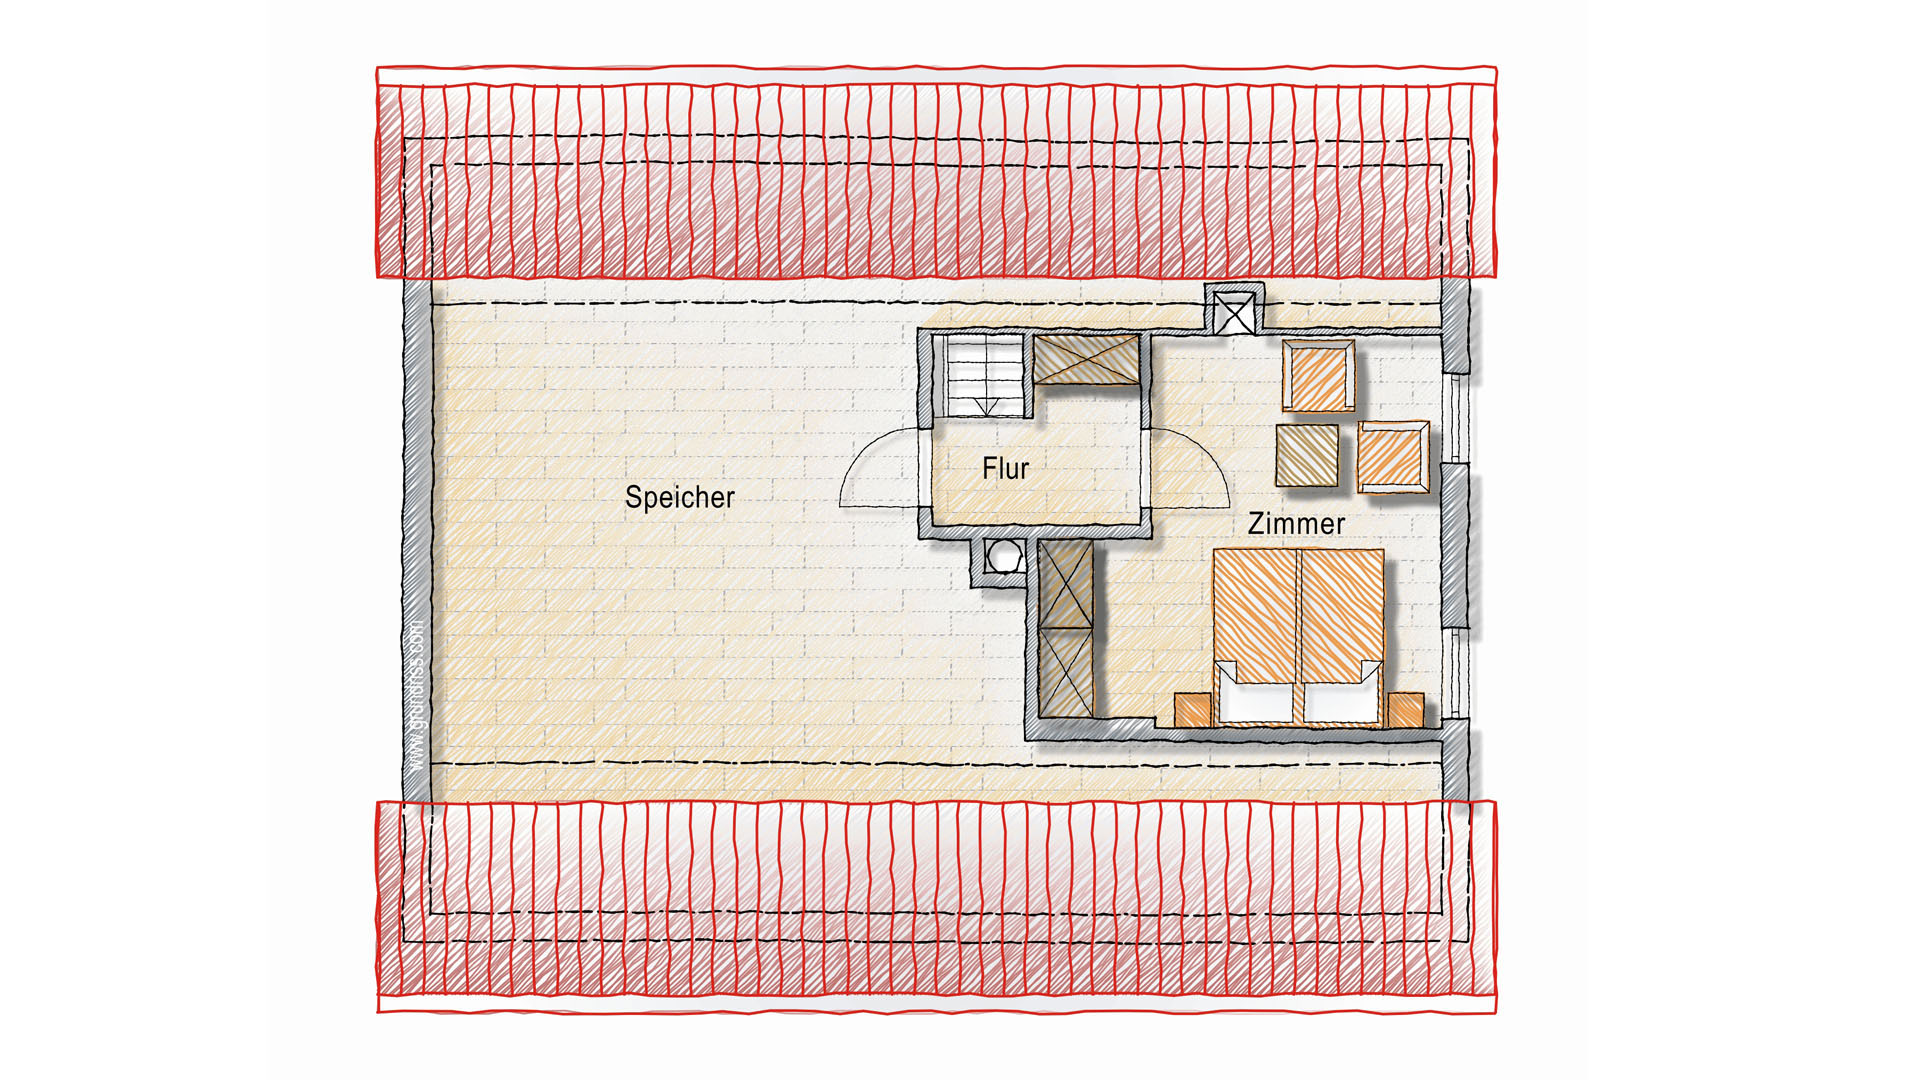 Eckenhagen: Gutbürgerliches, gemütliches Fachwerkhaus mit Garten, Dachgeschoss mit “Reservezimmer” 16,7 m²